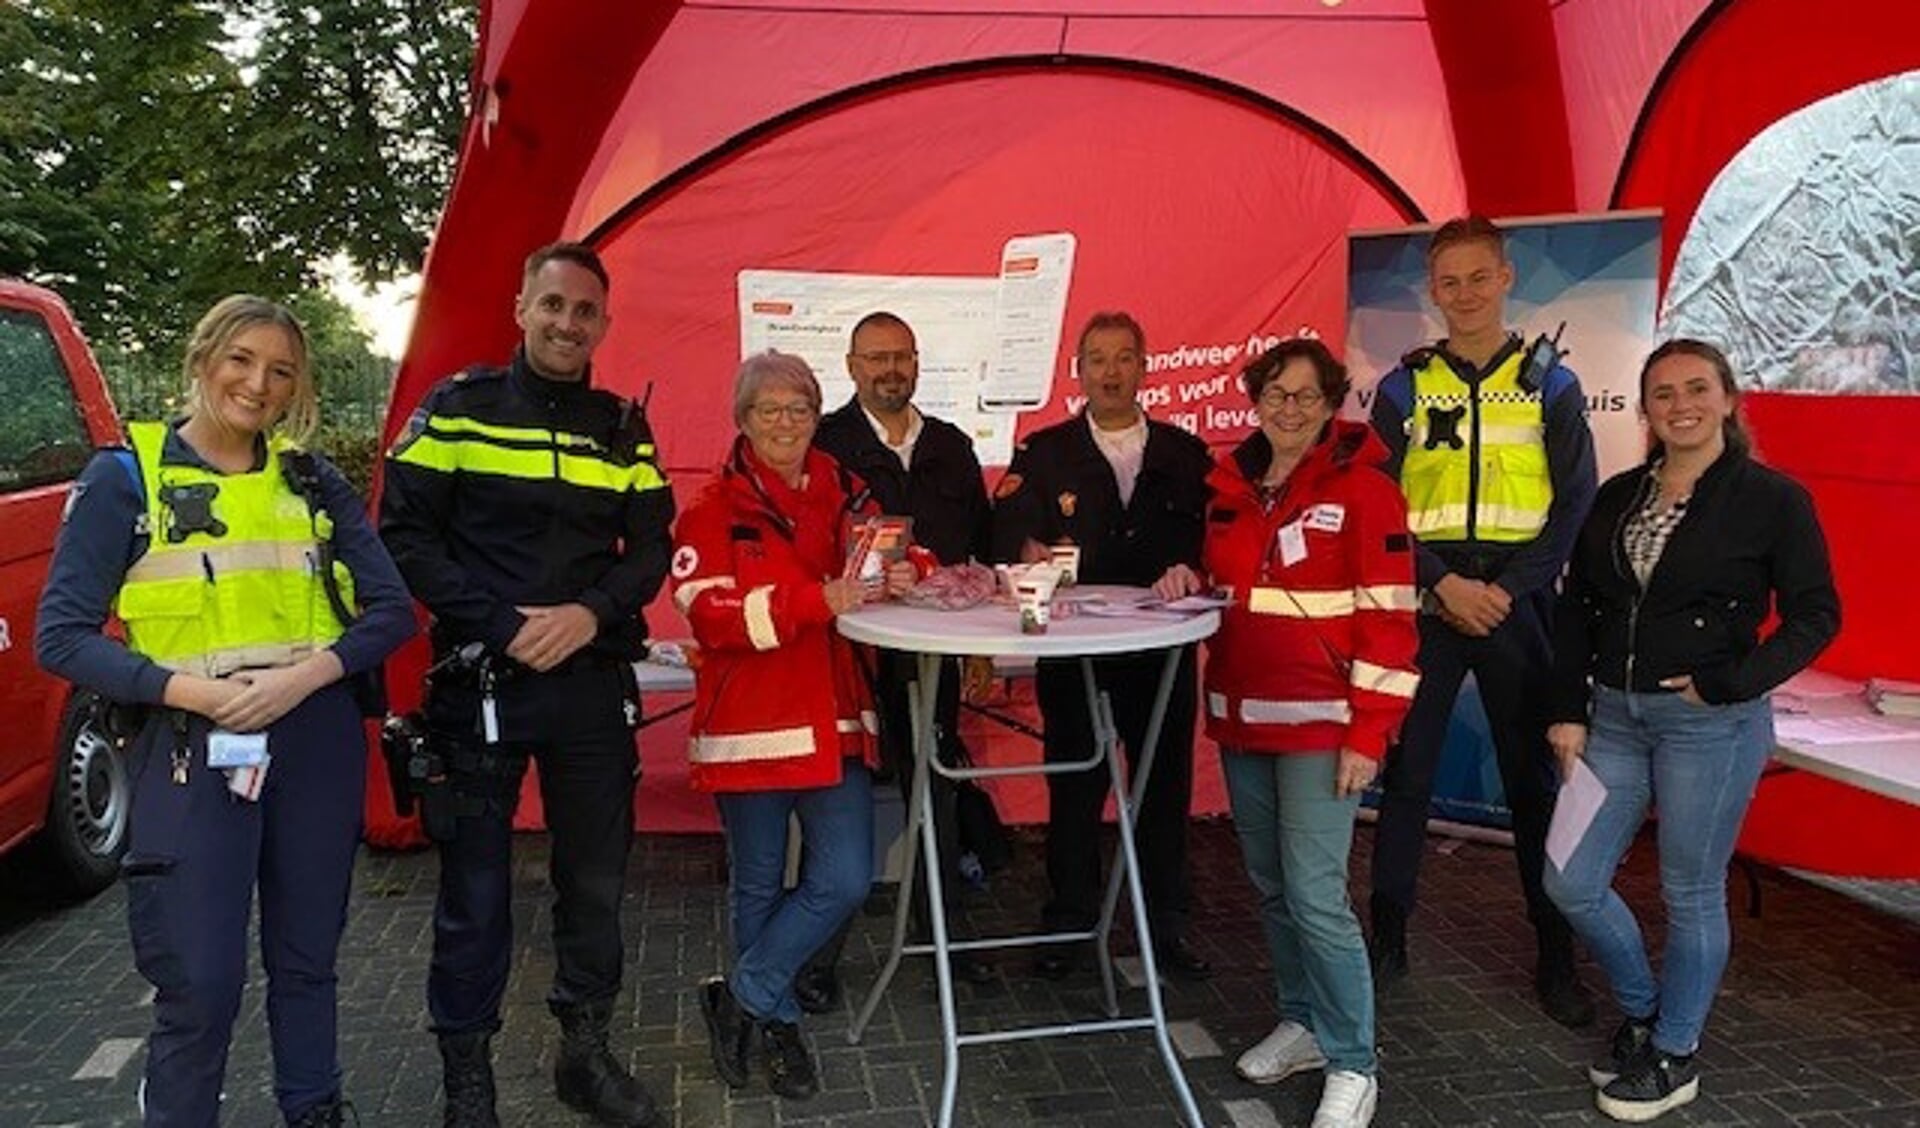 Op zaterdag 27 november van 09.30 tot 11.30 uur vindt er een bijeenkomst plaats in Ons Trefpunt aan de Sint Jozefstraat 1 in Den Bosch. Met kraampjes van onder andere de politie, de brandweer en de gemeente. 